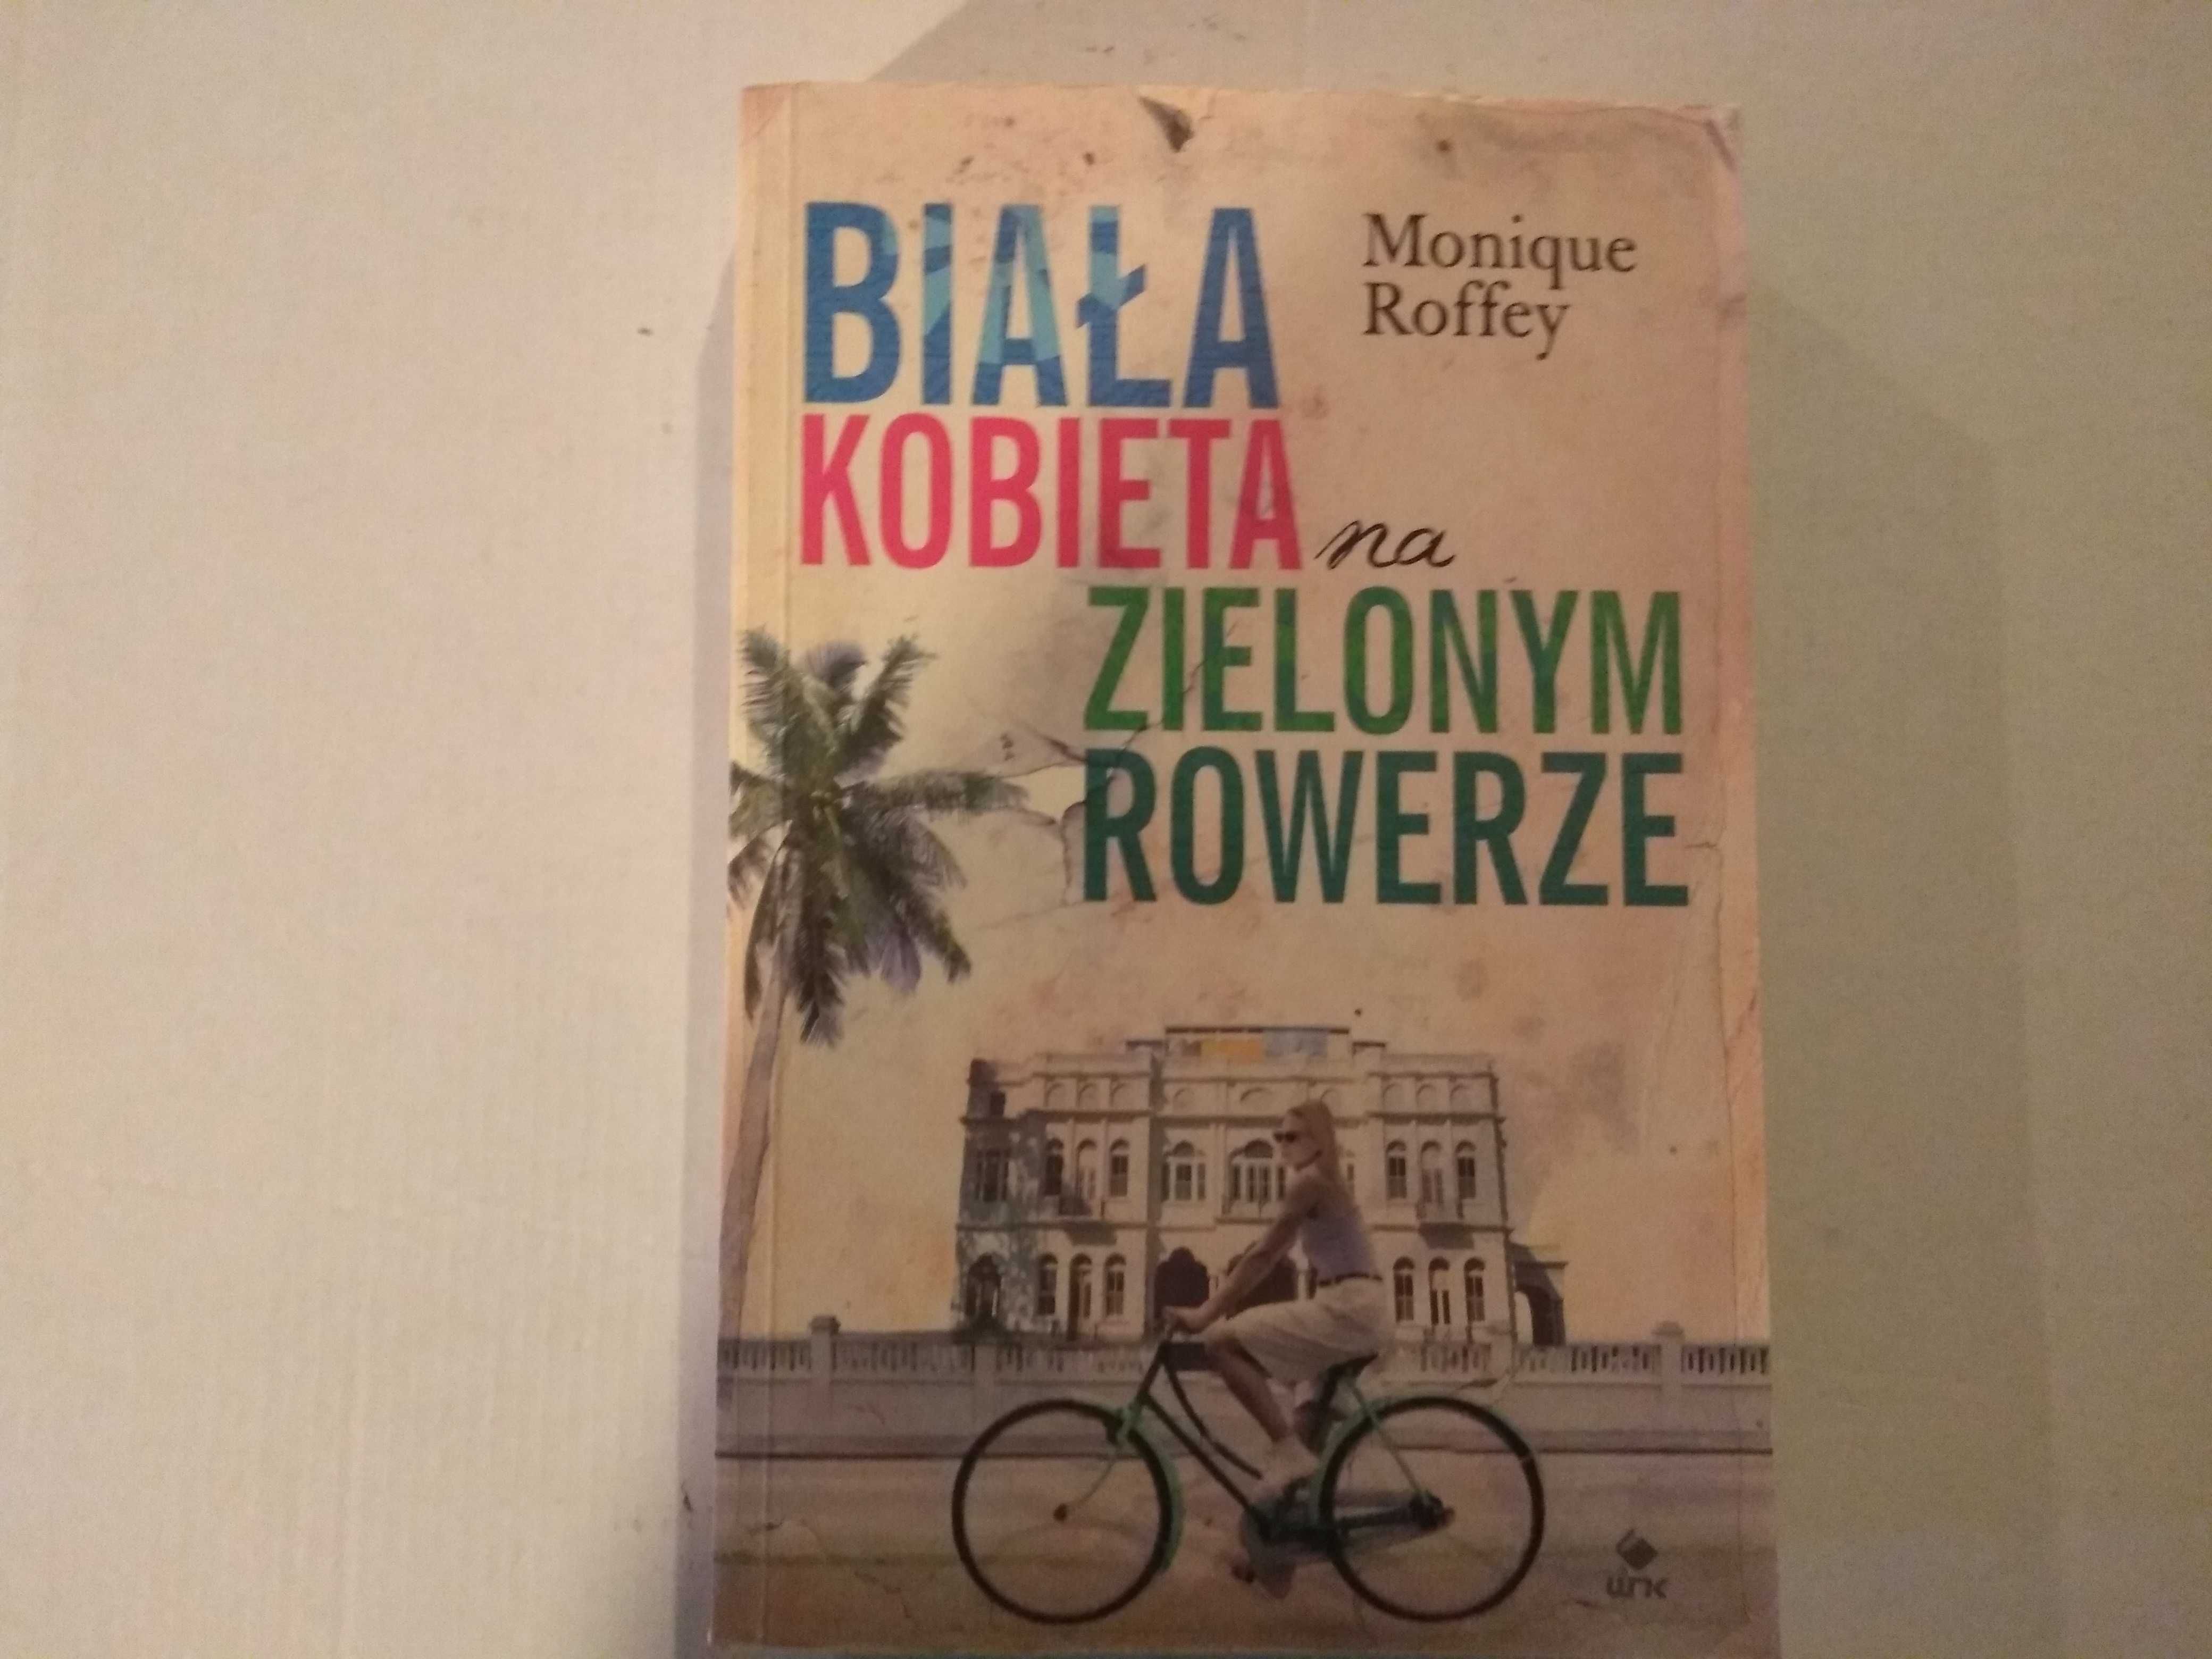 Dobra książka - Biała kobieta na zielonym rowerze Monique Roffey (F7)